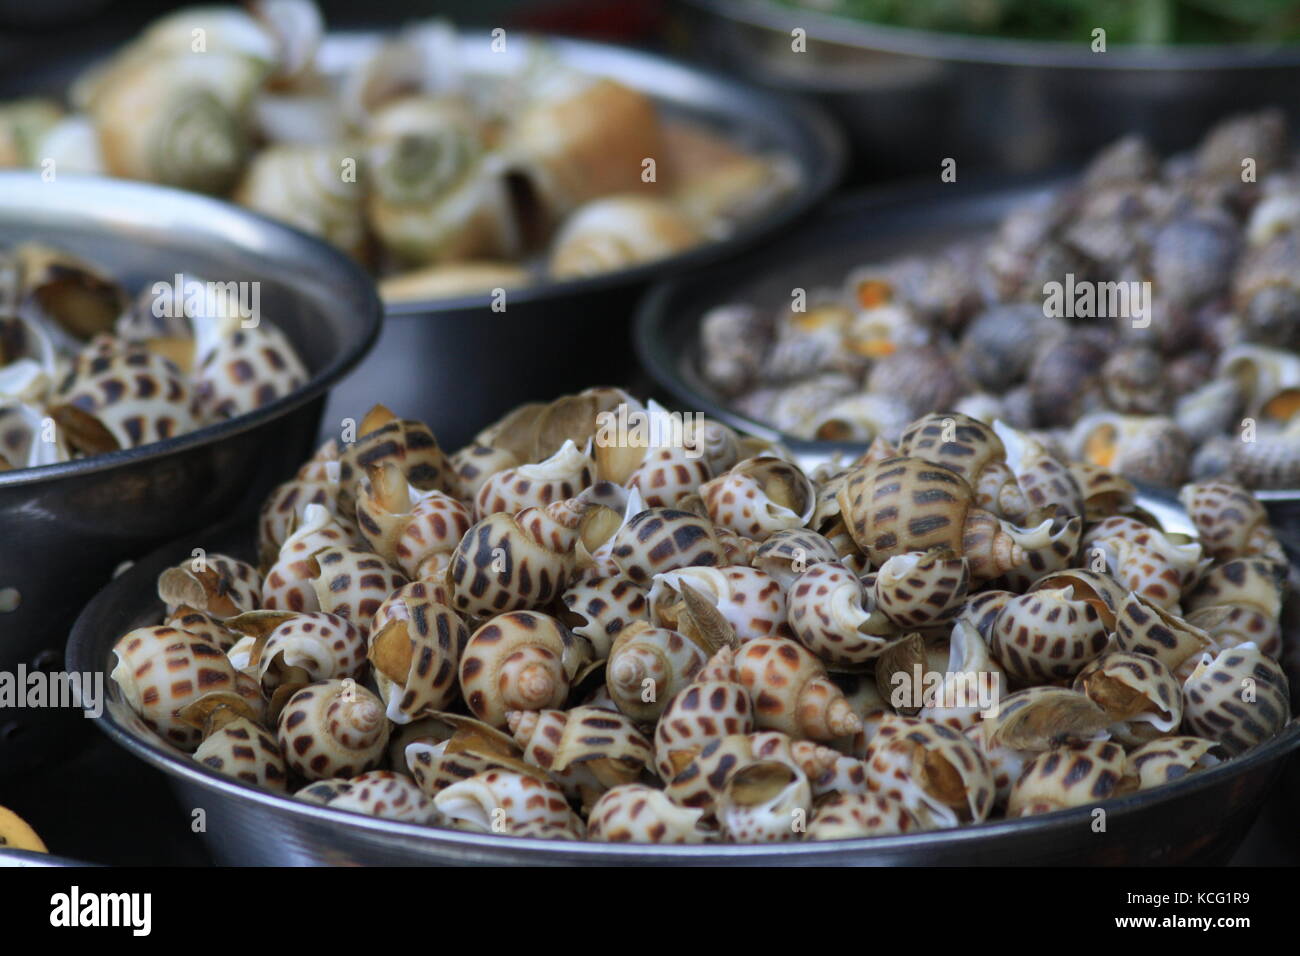 Snails on market in Vietnam to eat - Schnecken auf Markt in Vietnam zum essen Stock Photo